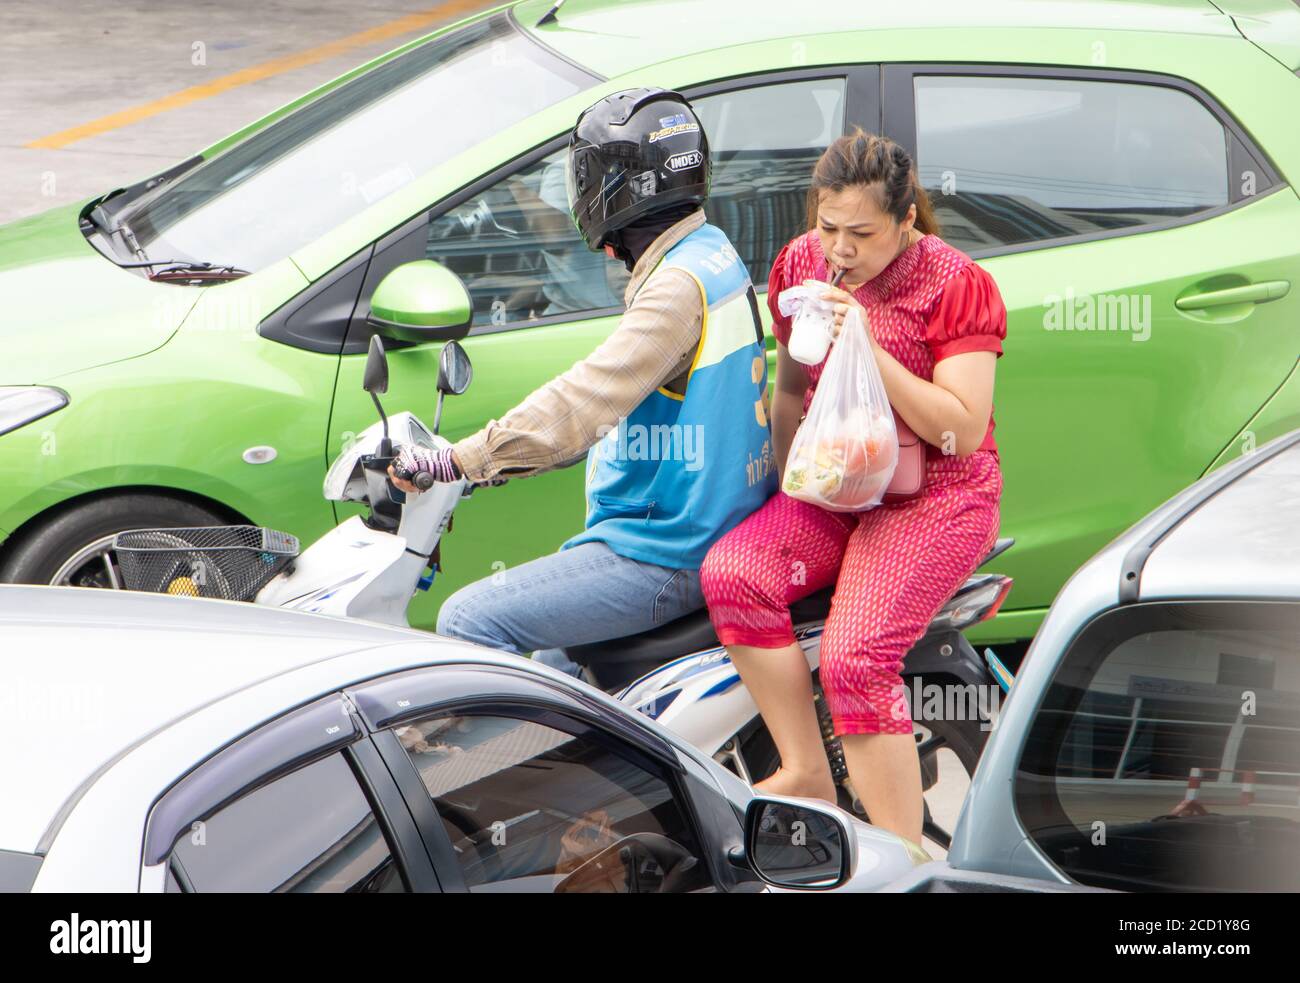 SAMUT PRAKAN, THAILAND, JULI 03 2020, EIN Taxifahrer auf einem Motorrad fährt mit einer trinkenden Frau. Der mototaxi-Fahrer trägt einen Passagier zwischen den Autos auf Stockfoto